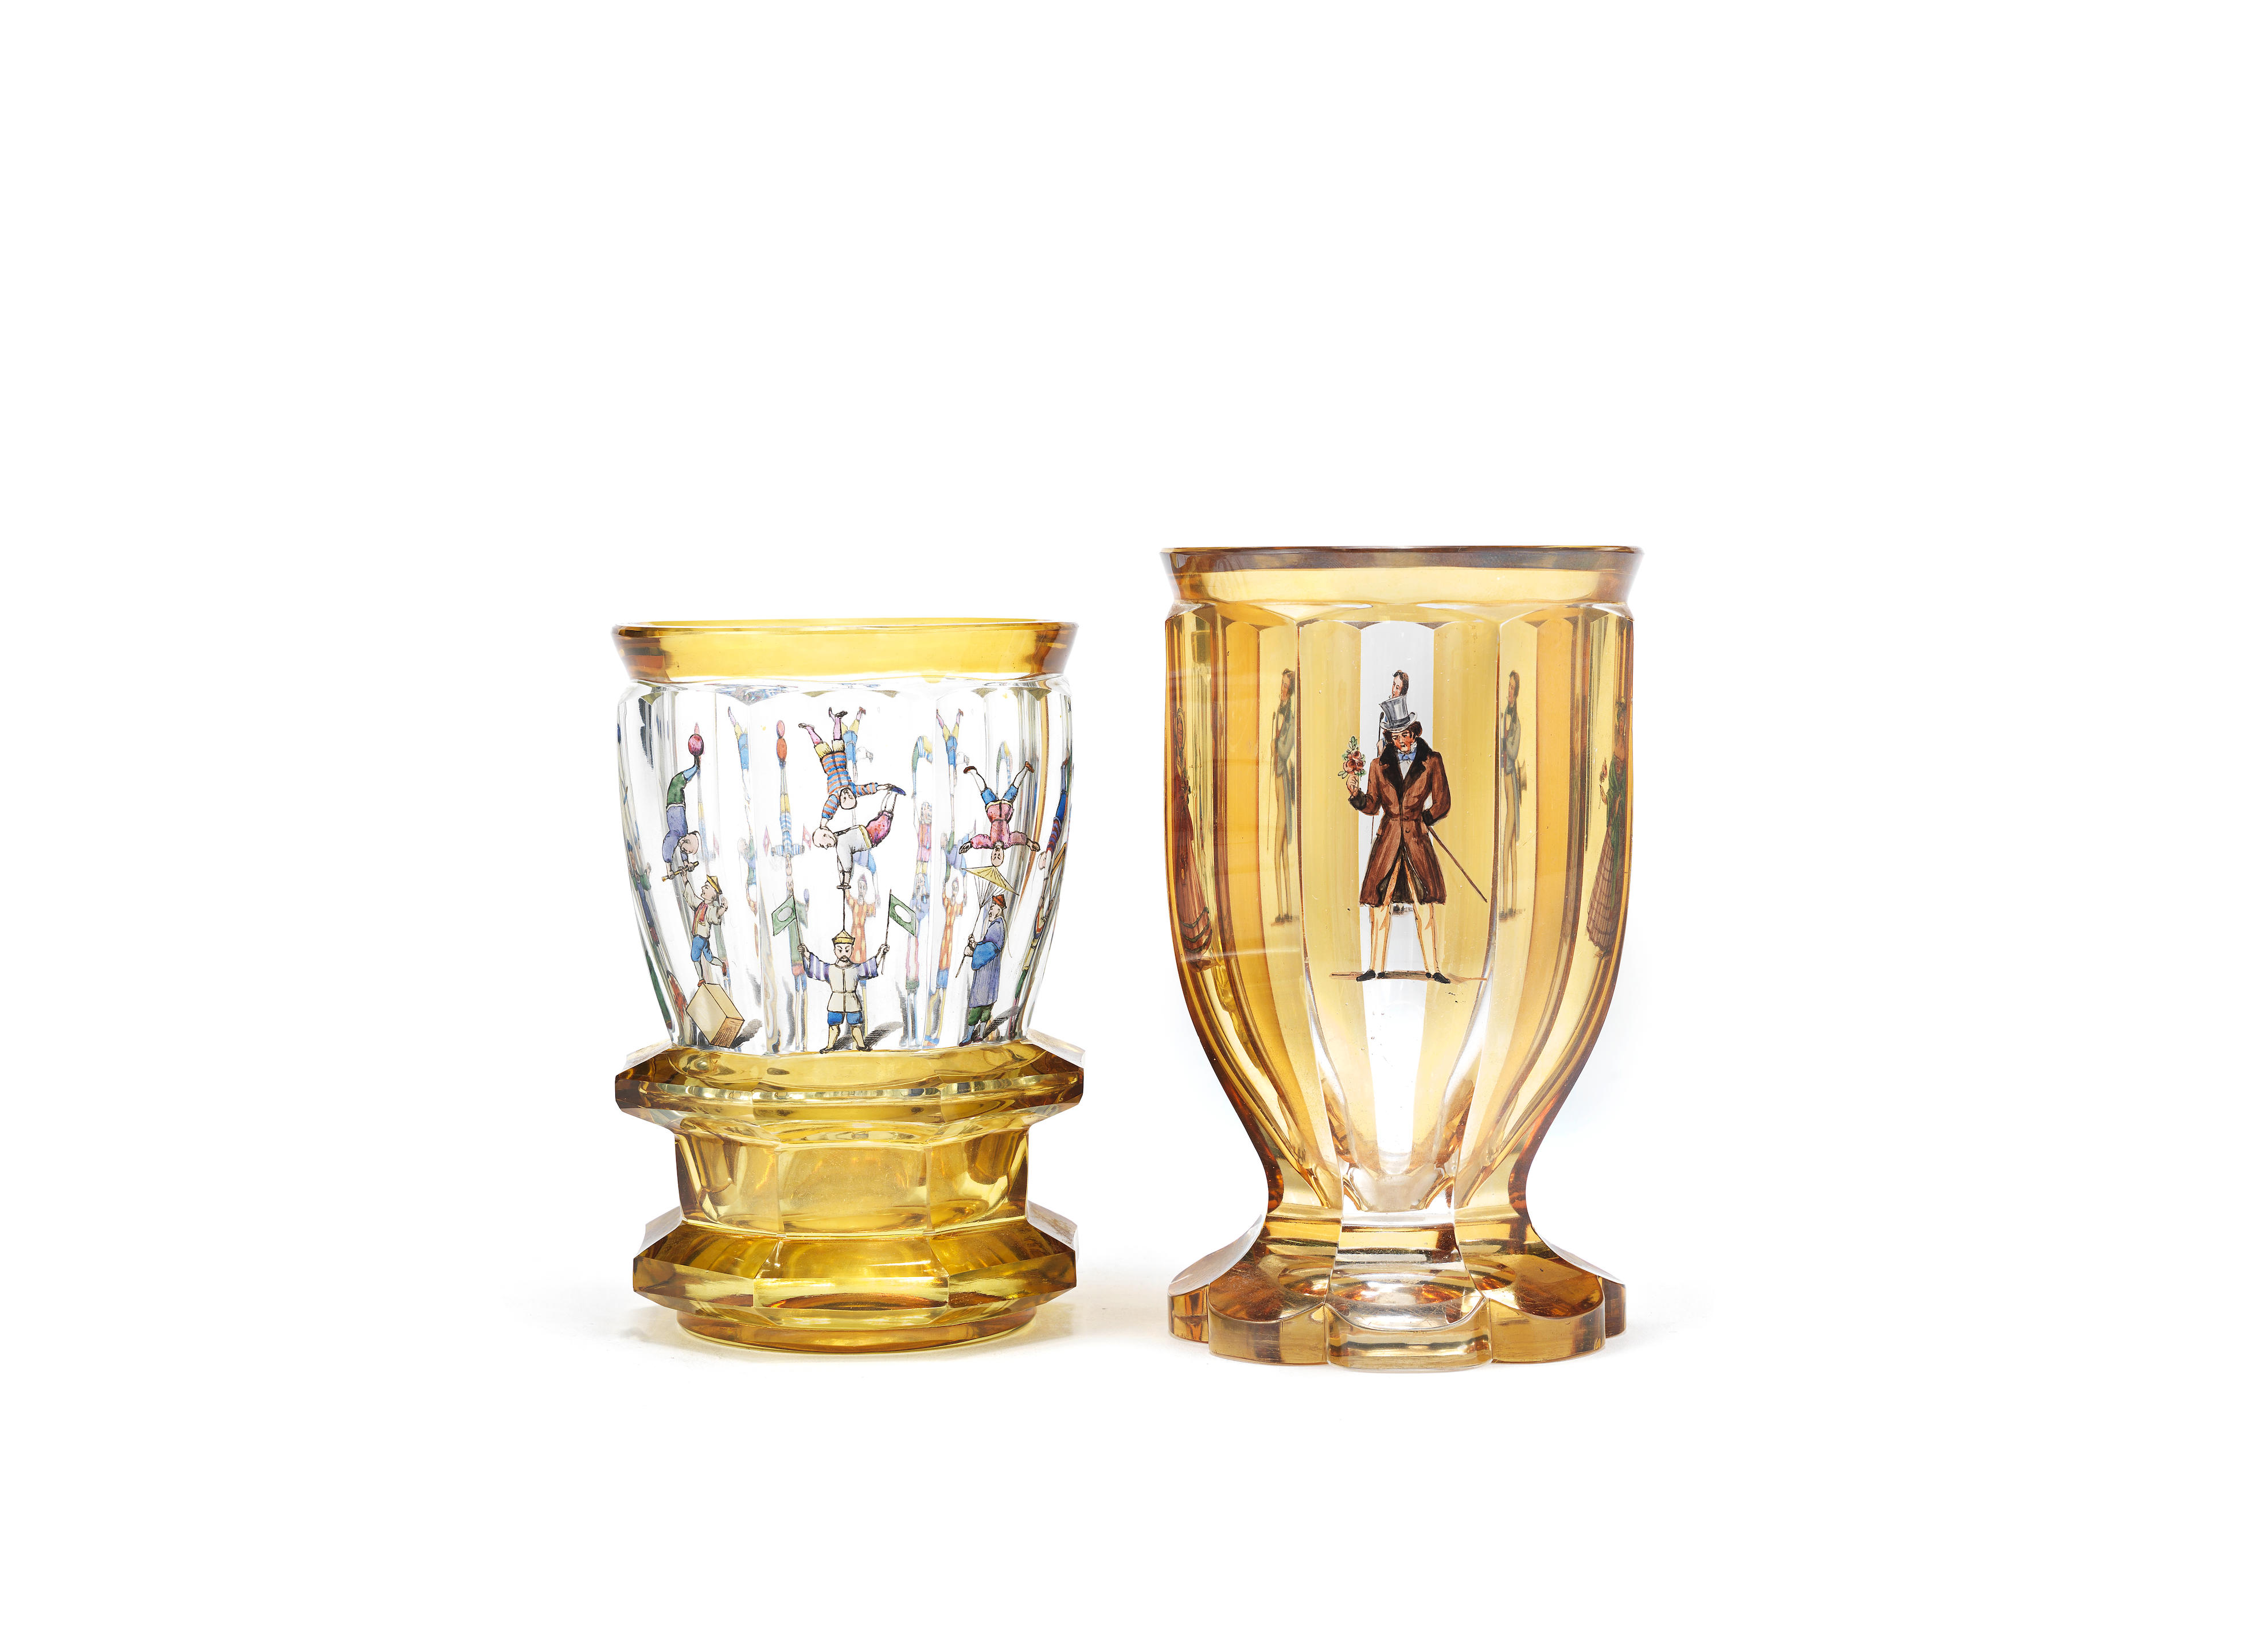 Two Bohemian transparent-enamelled beakers, circa 1850-80